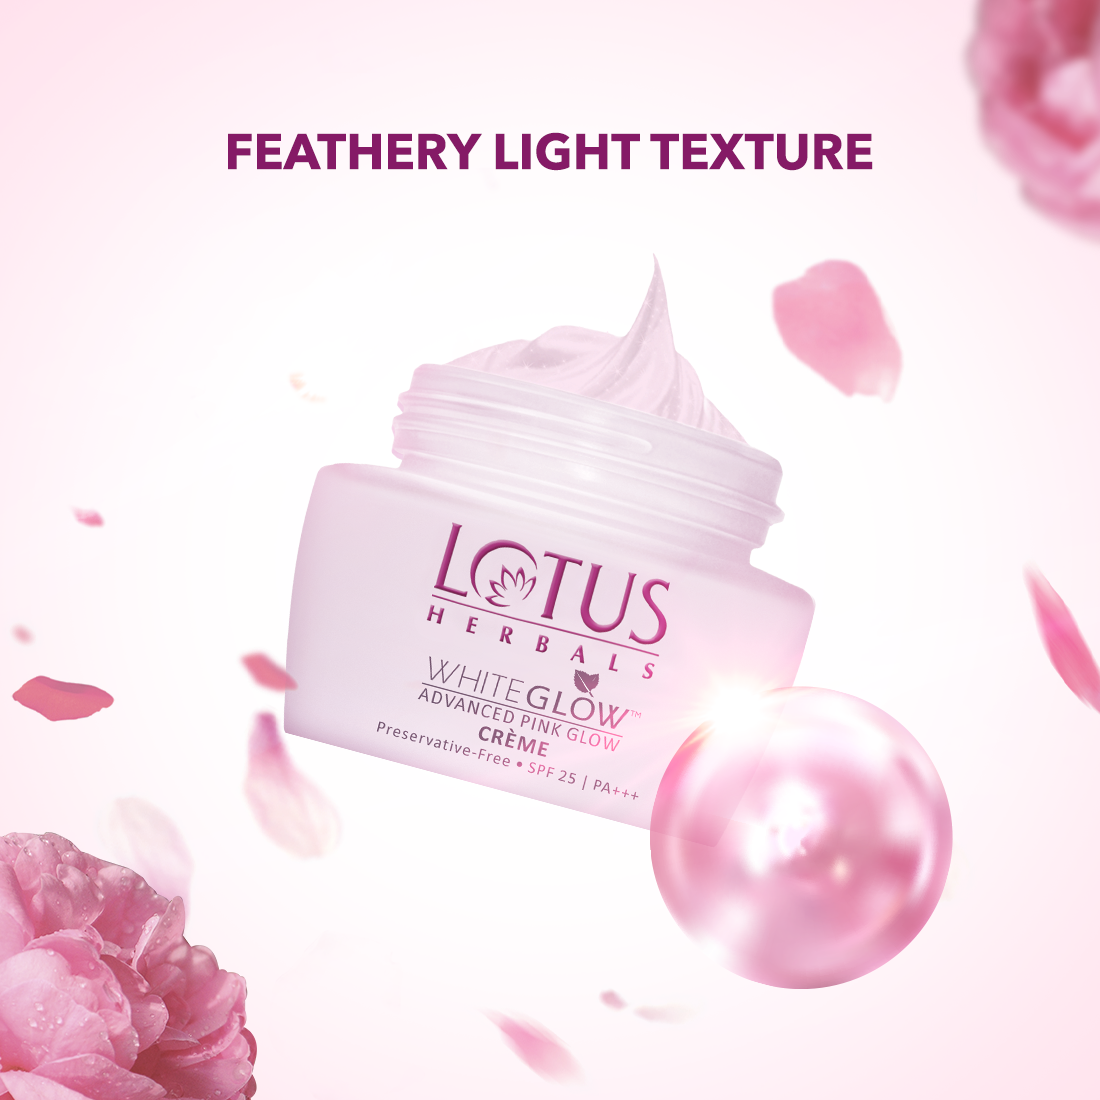 Lotus Herbals WhiteGlow Advanced Pink Glow Cream SPF 25 I PA+++ (50 g) Lotus Herbals